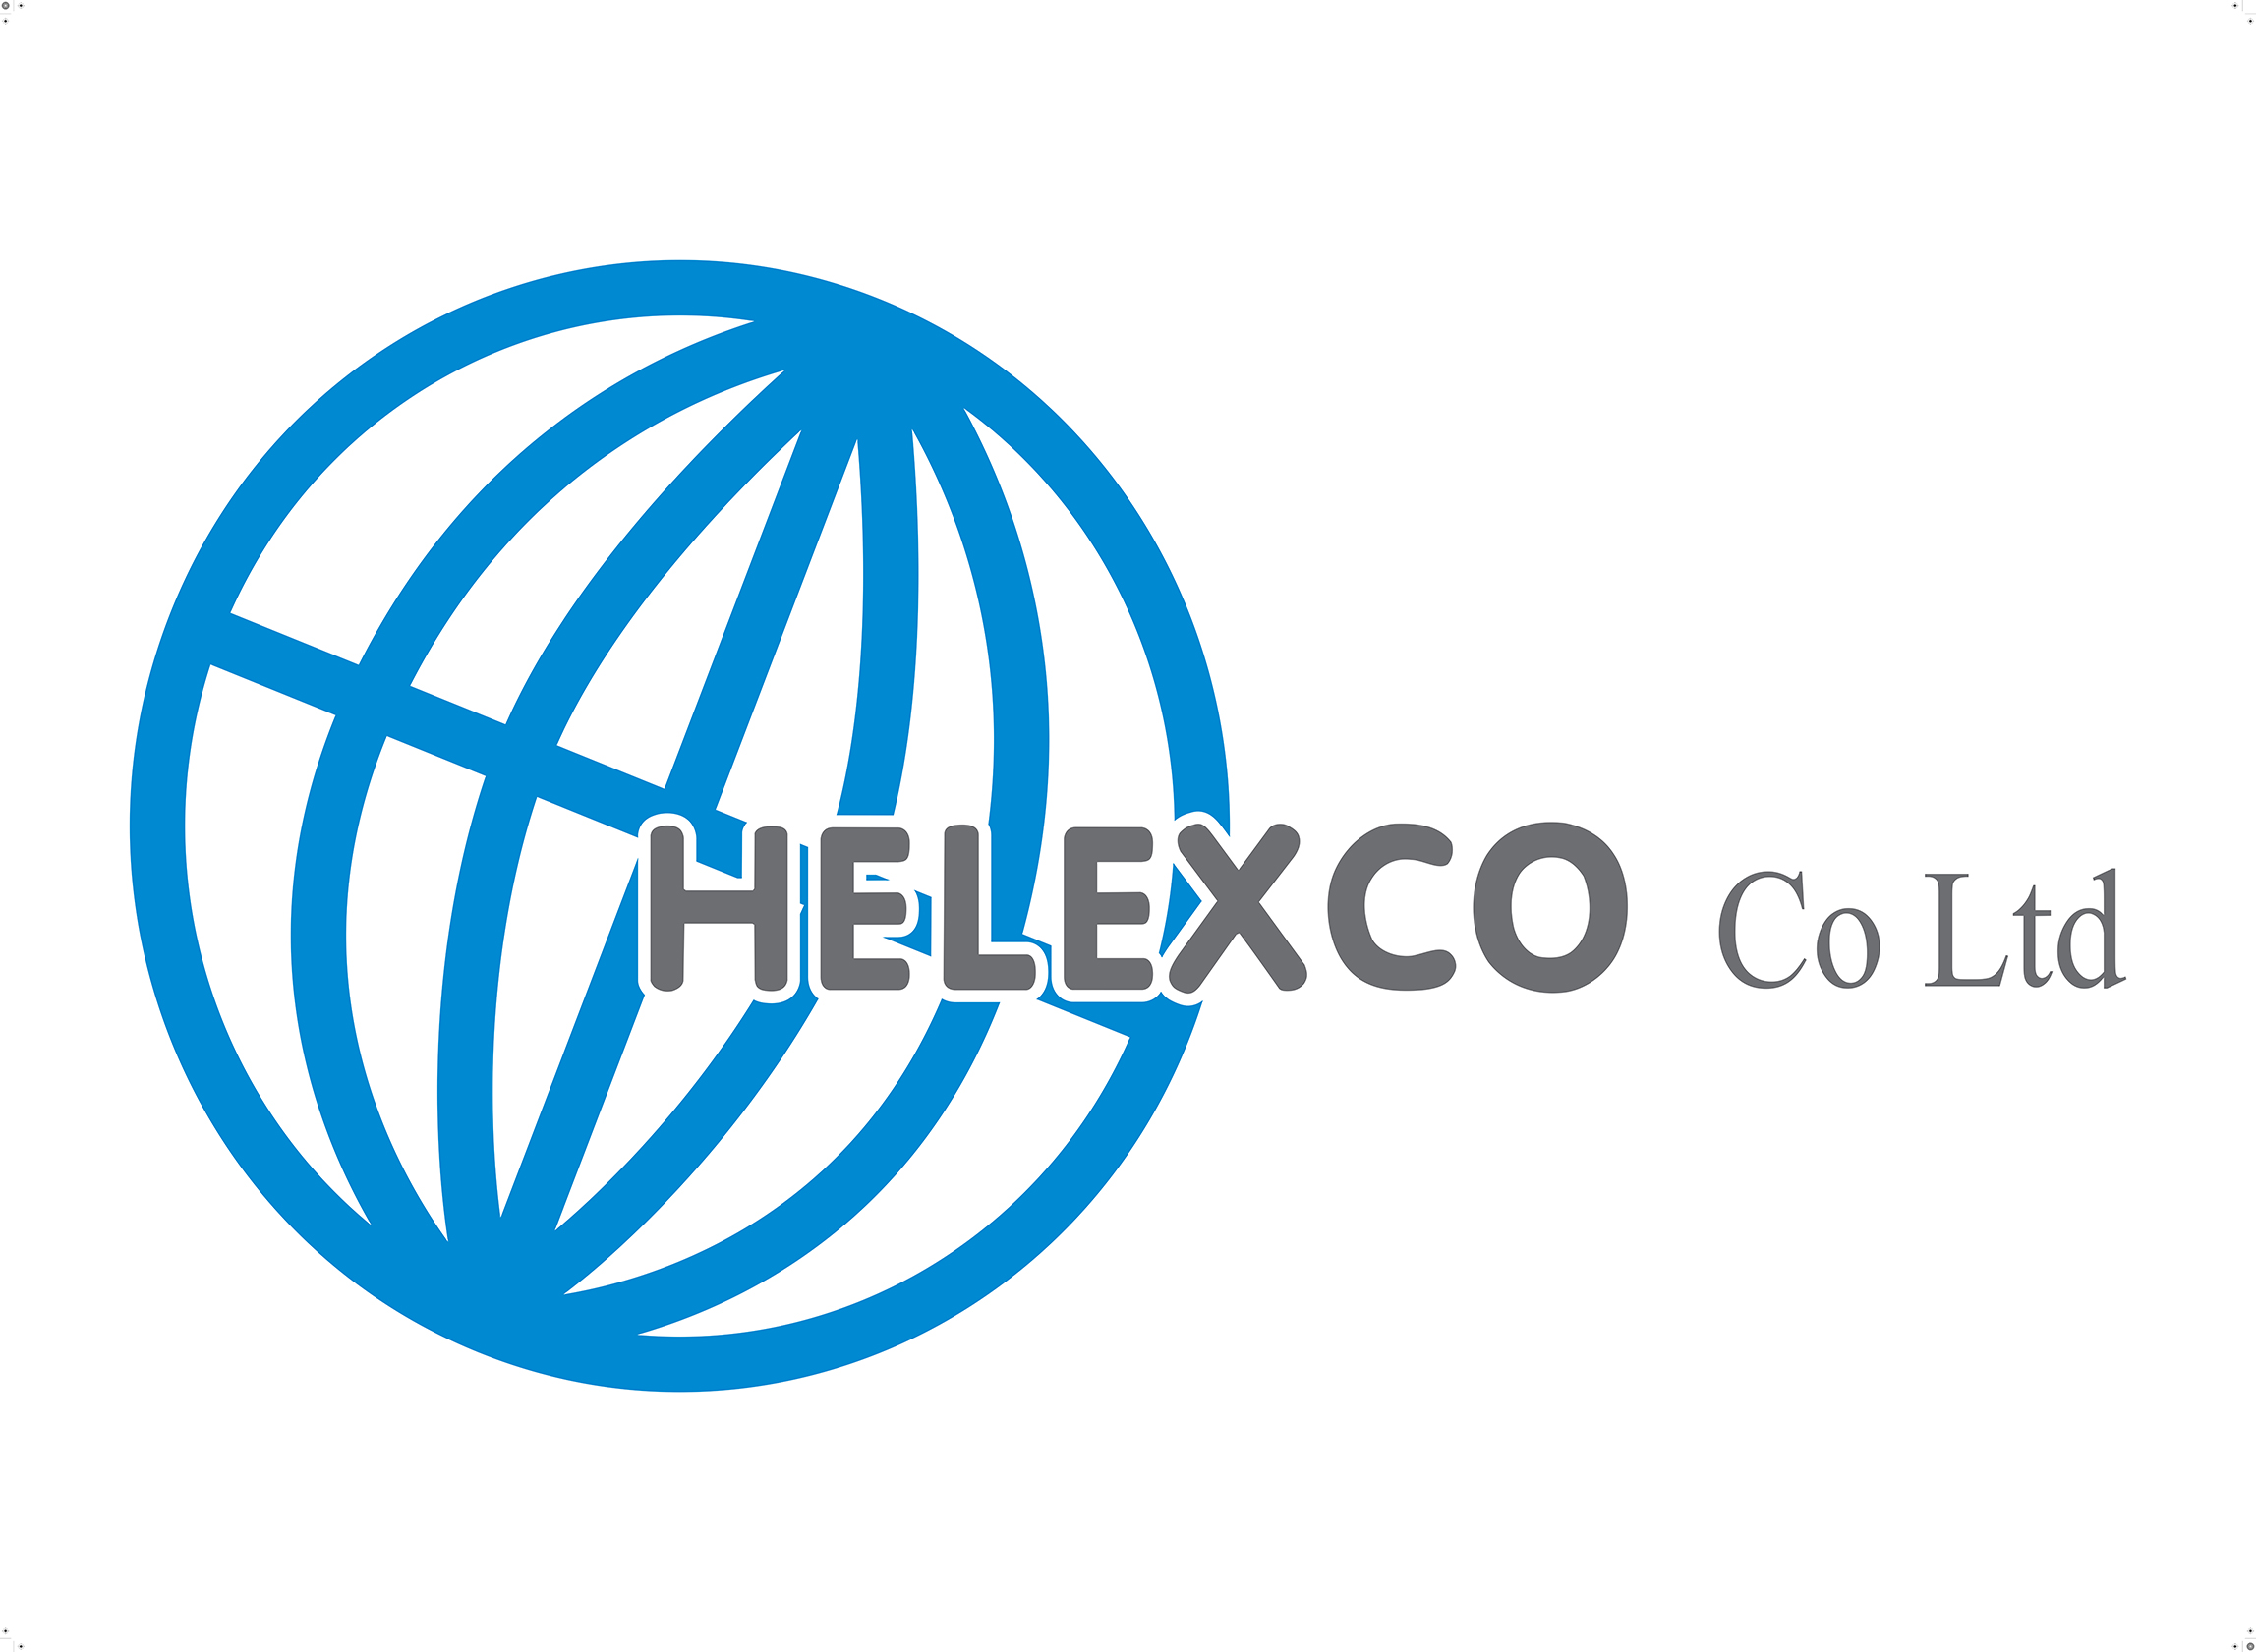 HELEXCO COMPANY LTD